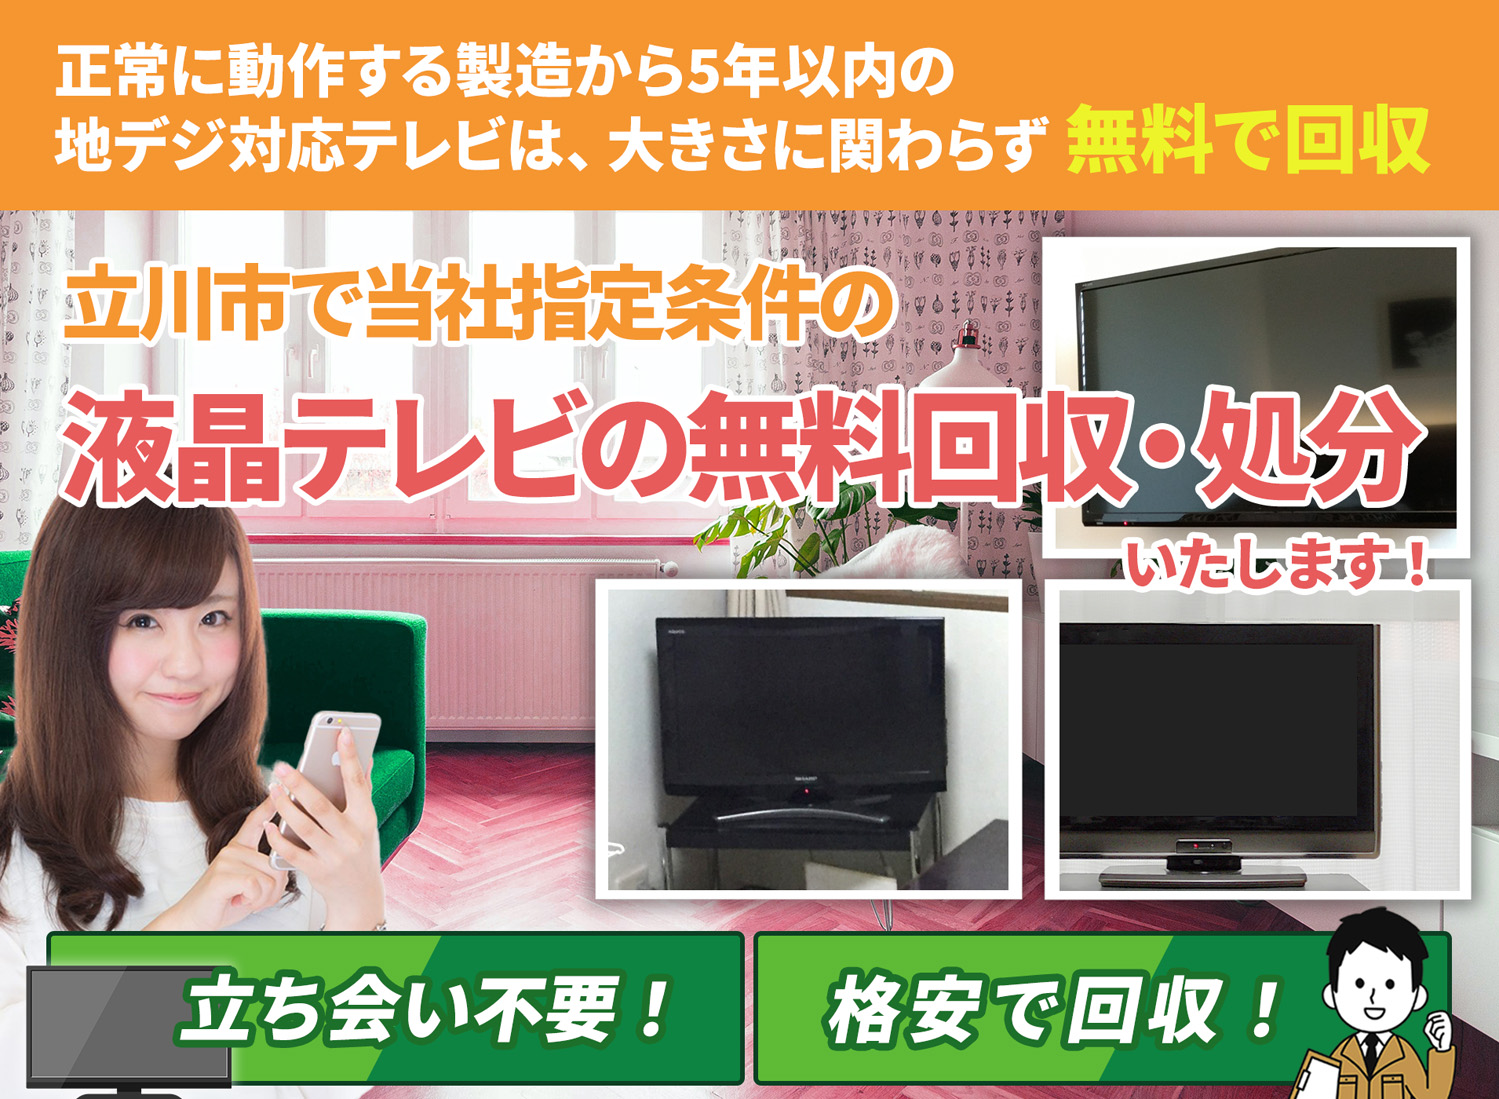 立川市のサービスで地域一番を目指す液晶テレビ無料回収処分隊の液晶テレビ無料回収サービス